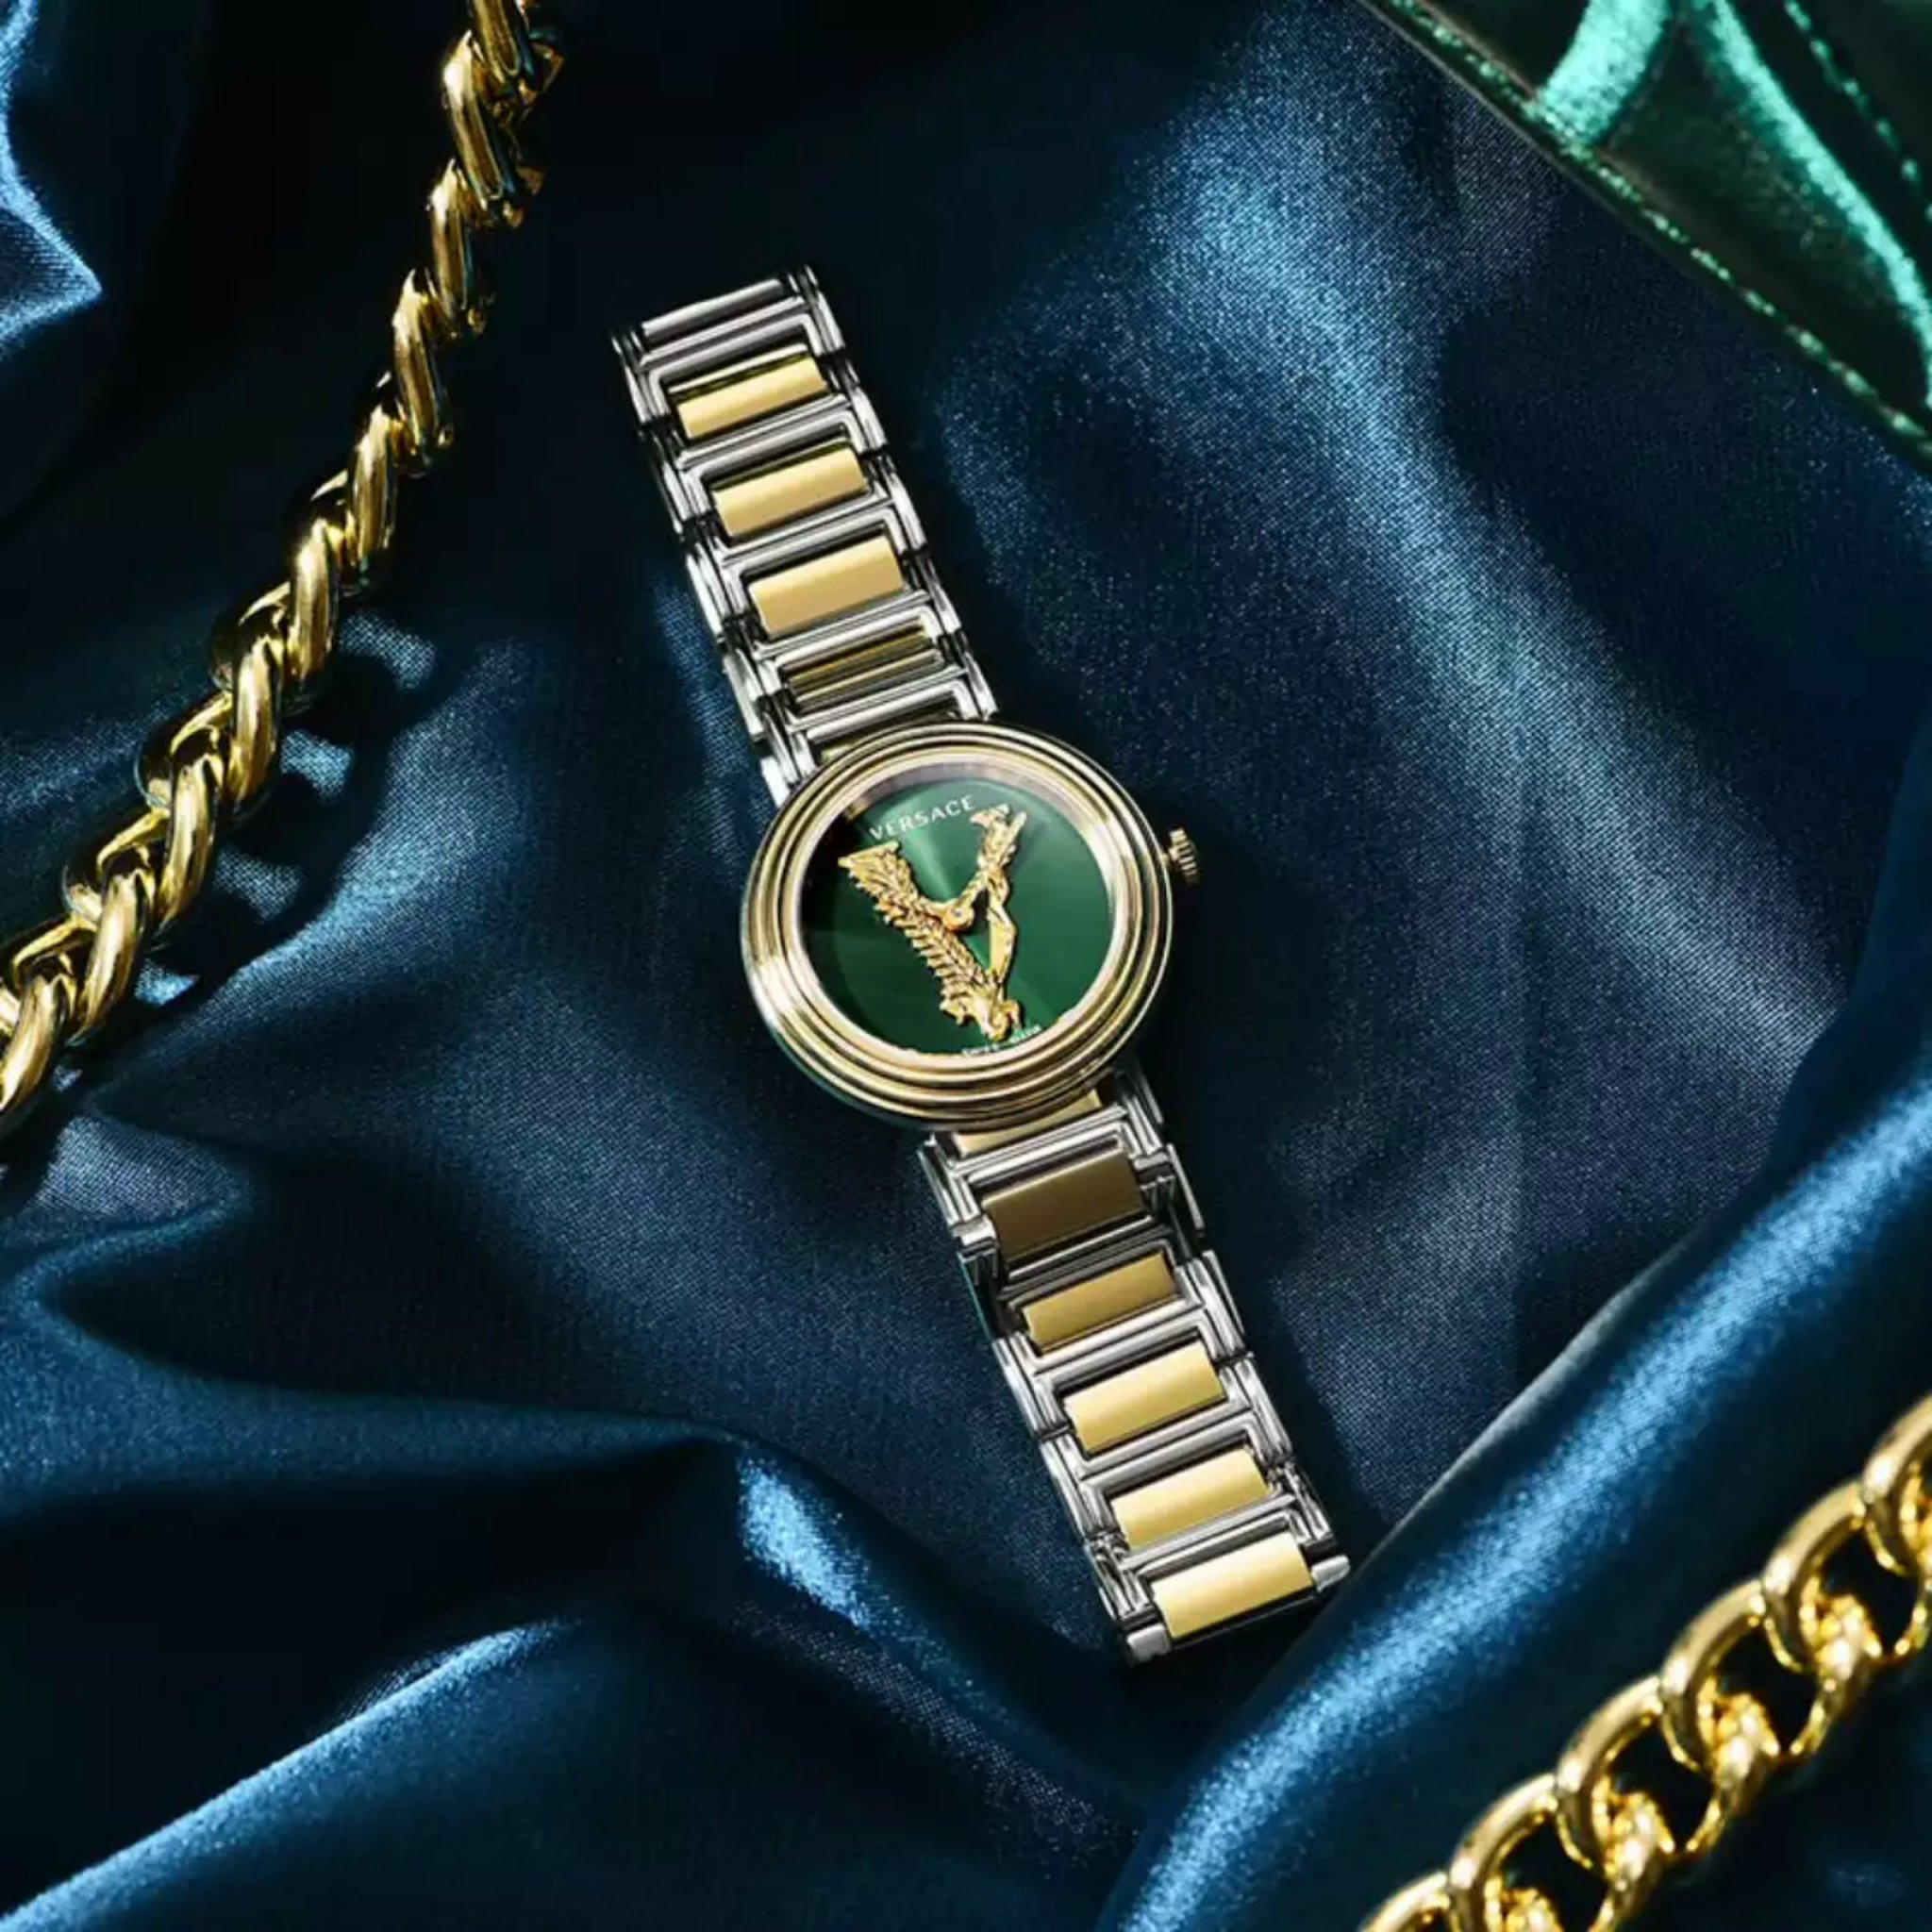 Đồng Hồ Nữ Versace Virtus Mini Duo Mặt chữ V cách điệu biểu tượng của hãng màu gold trên nền màu xanh lá siêu hot hit